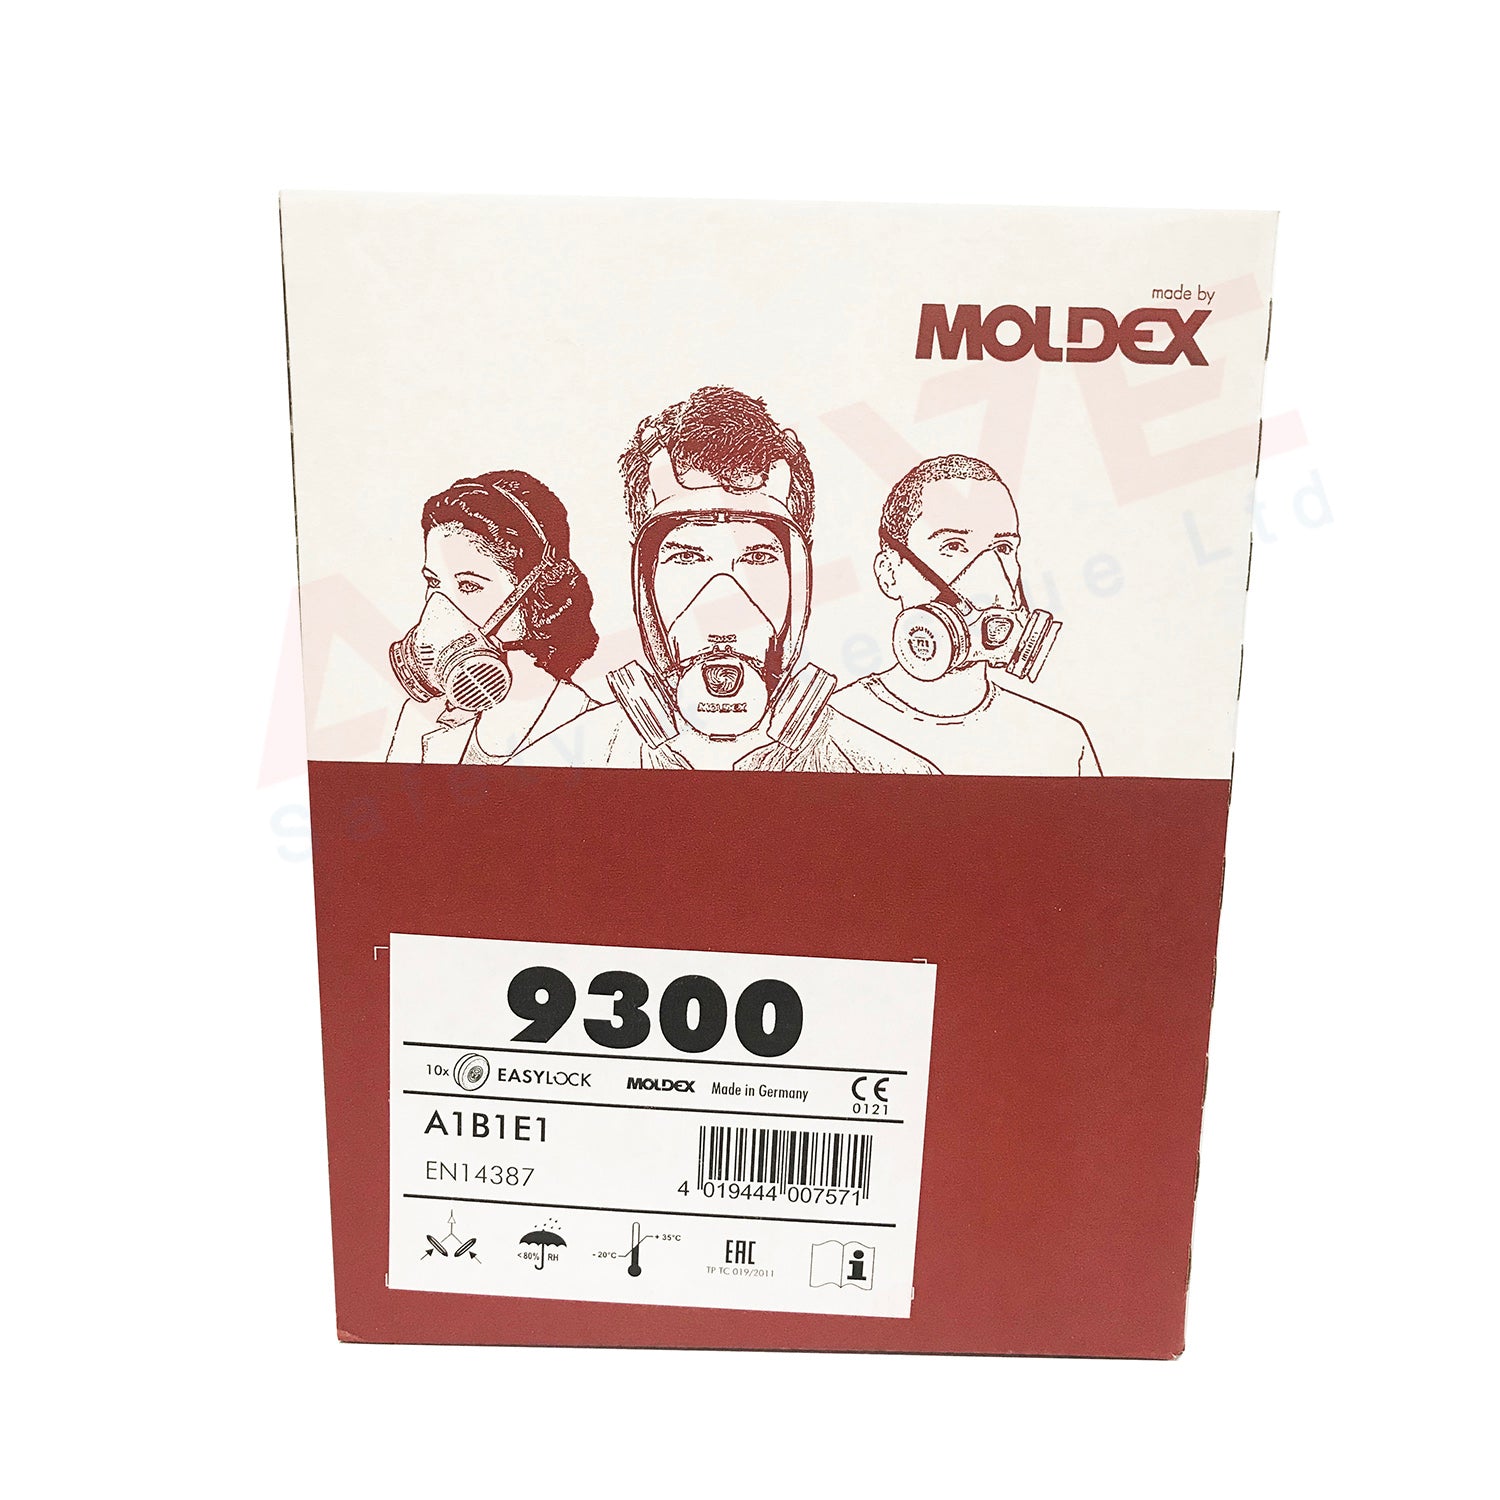 Moldex 9300 EasyLock A1B1E1 Gas Filters Box 1